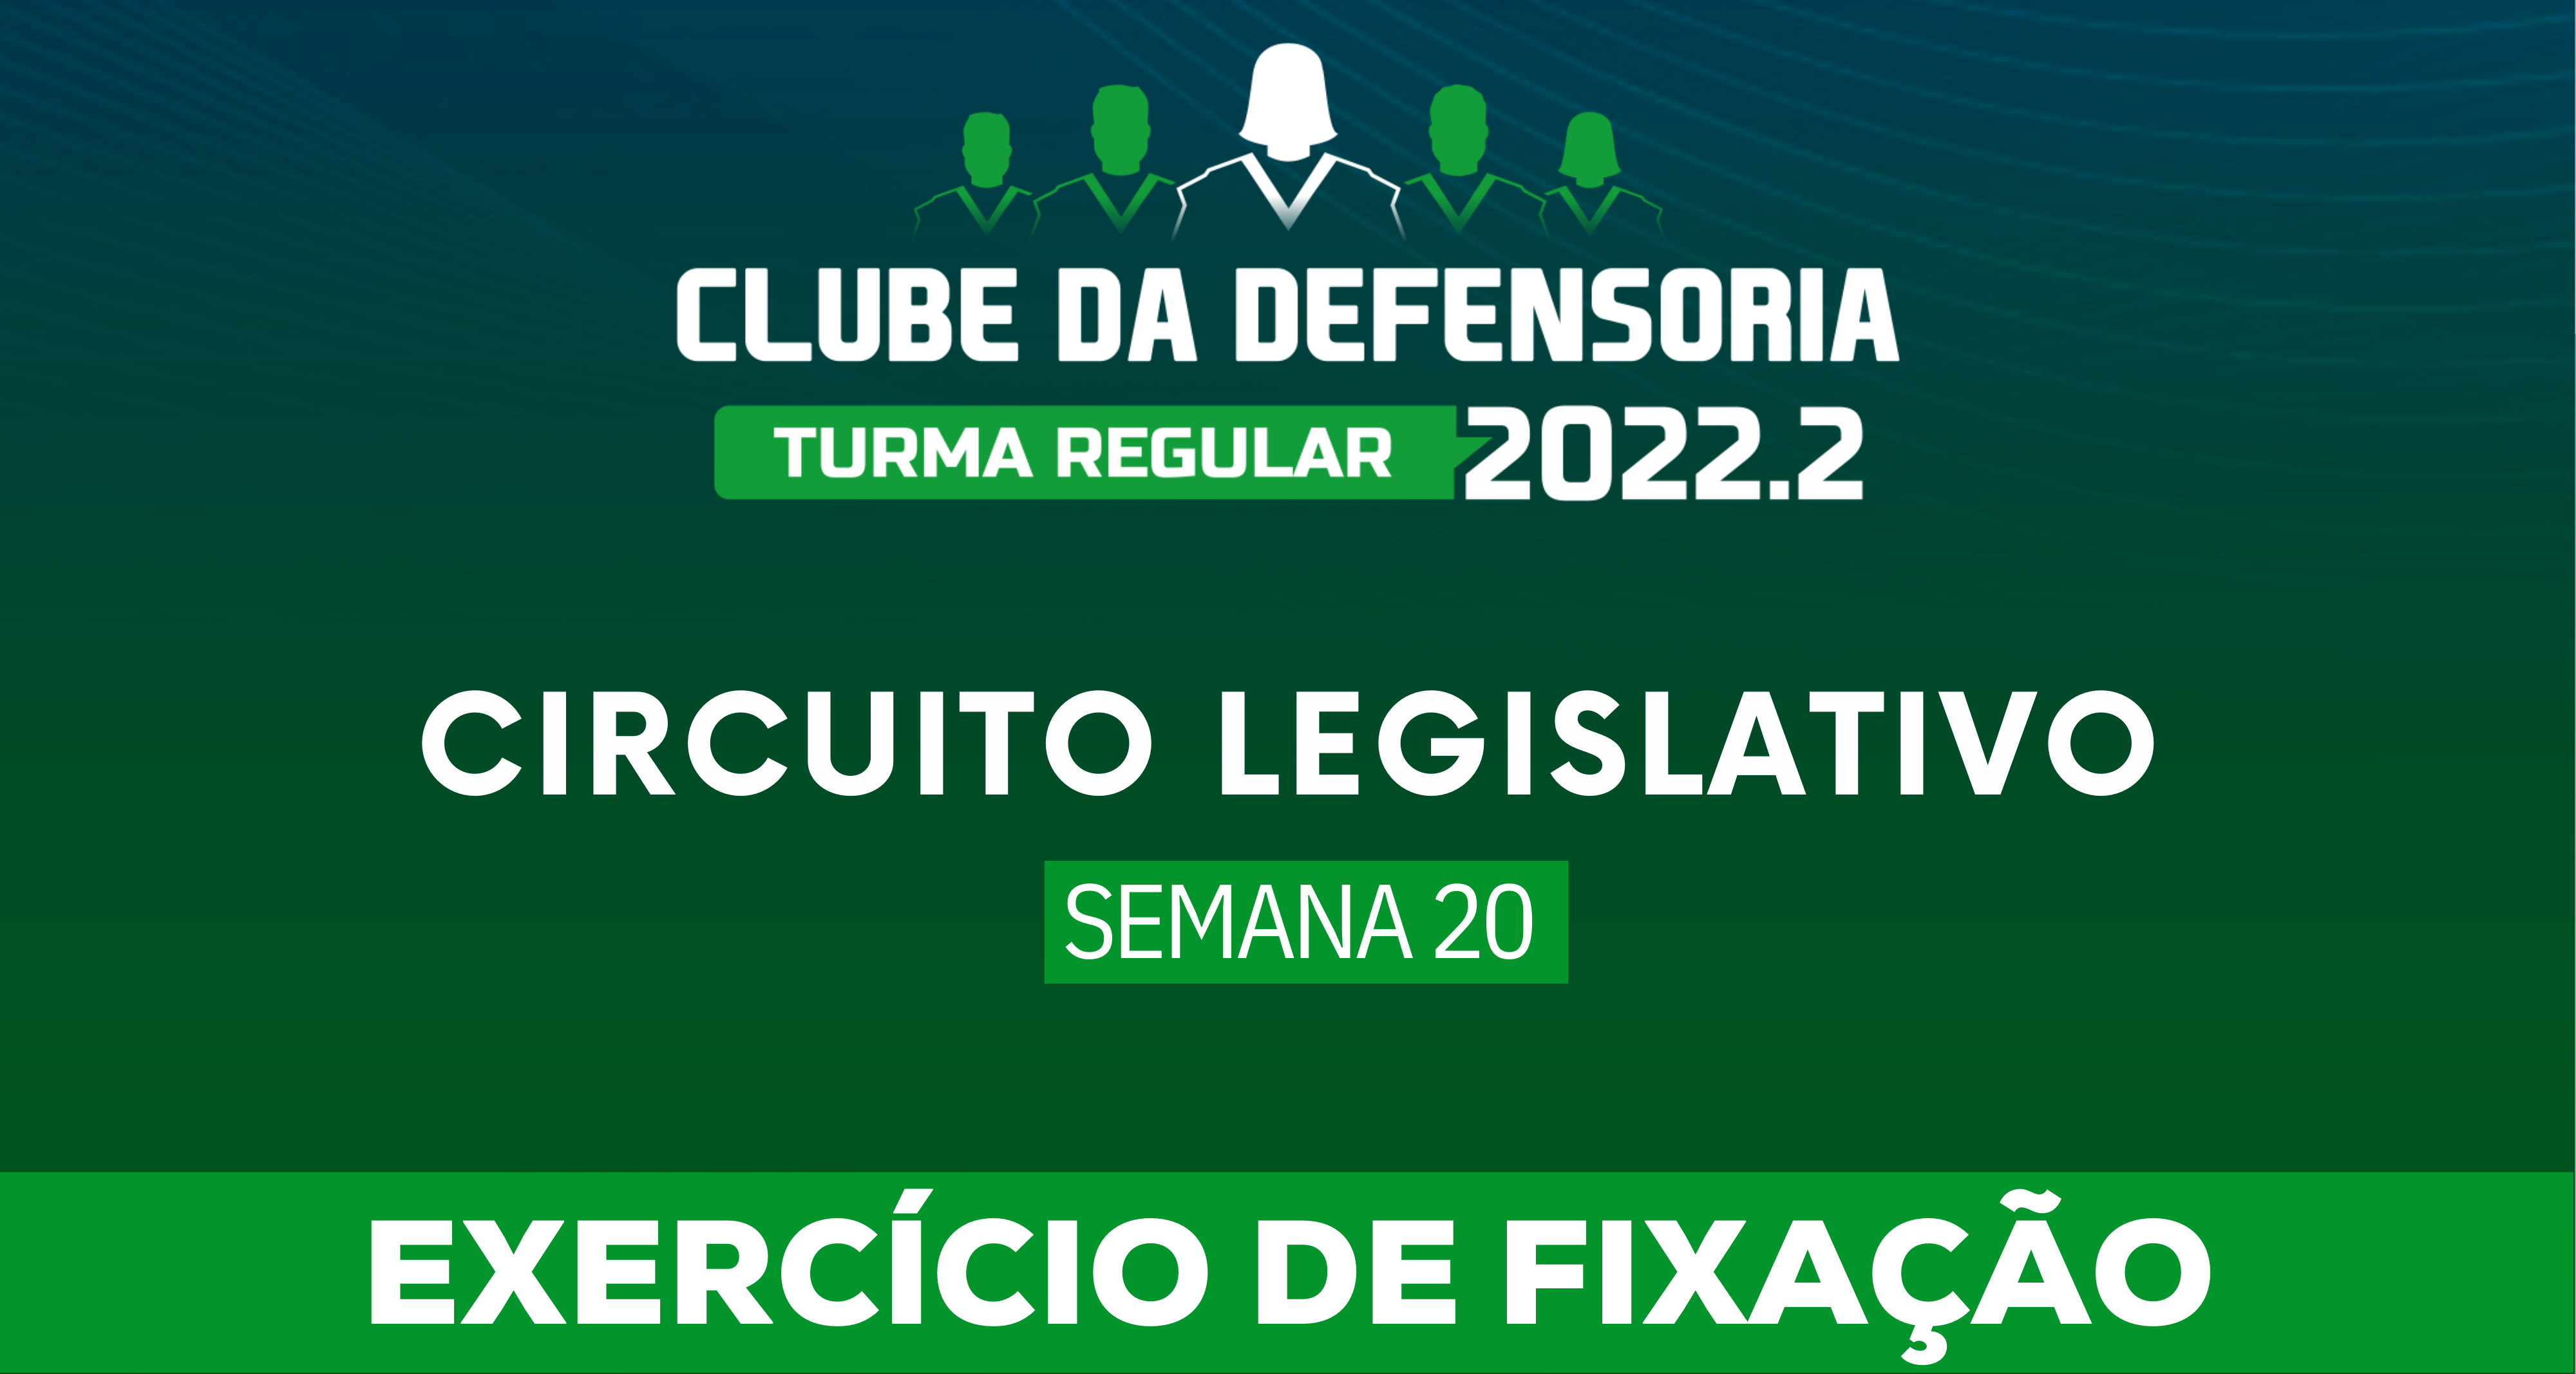 Circuito Legislativo 2022.2 (Clube da Defensoria - Semana 20)